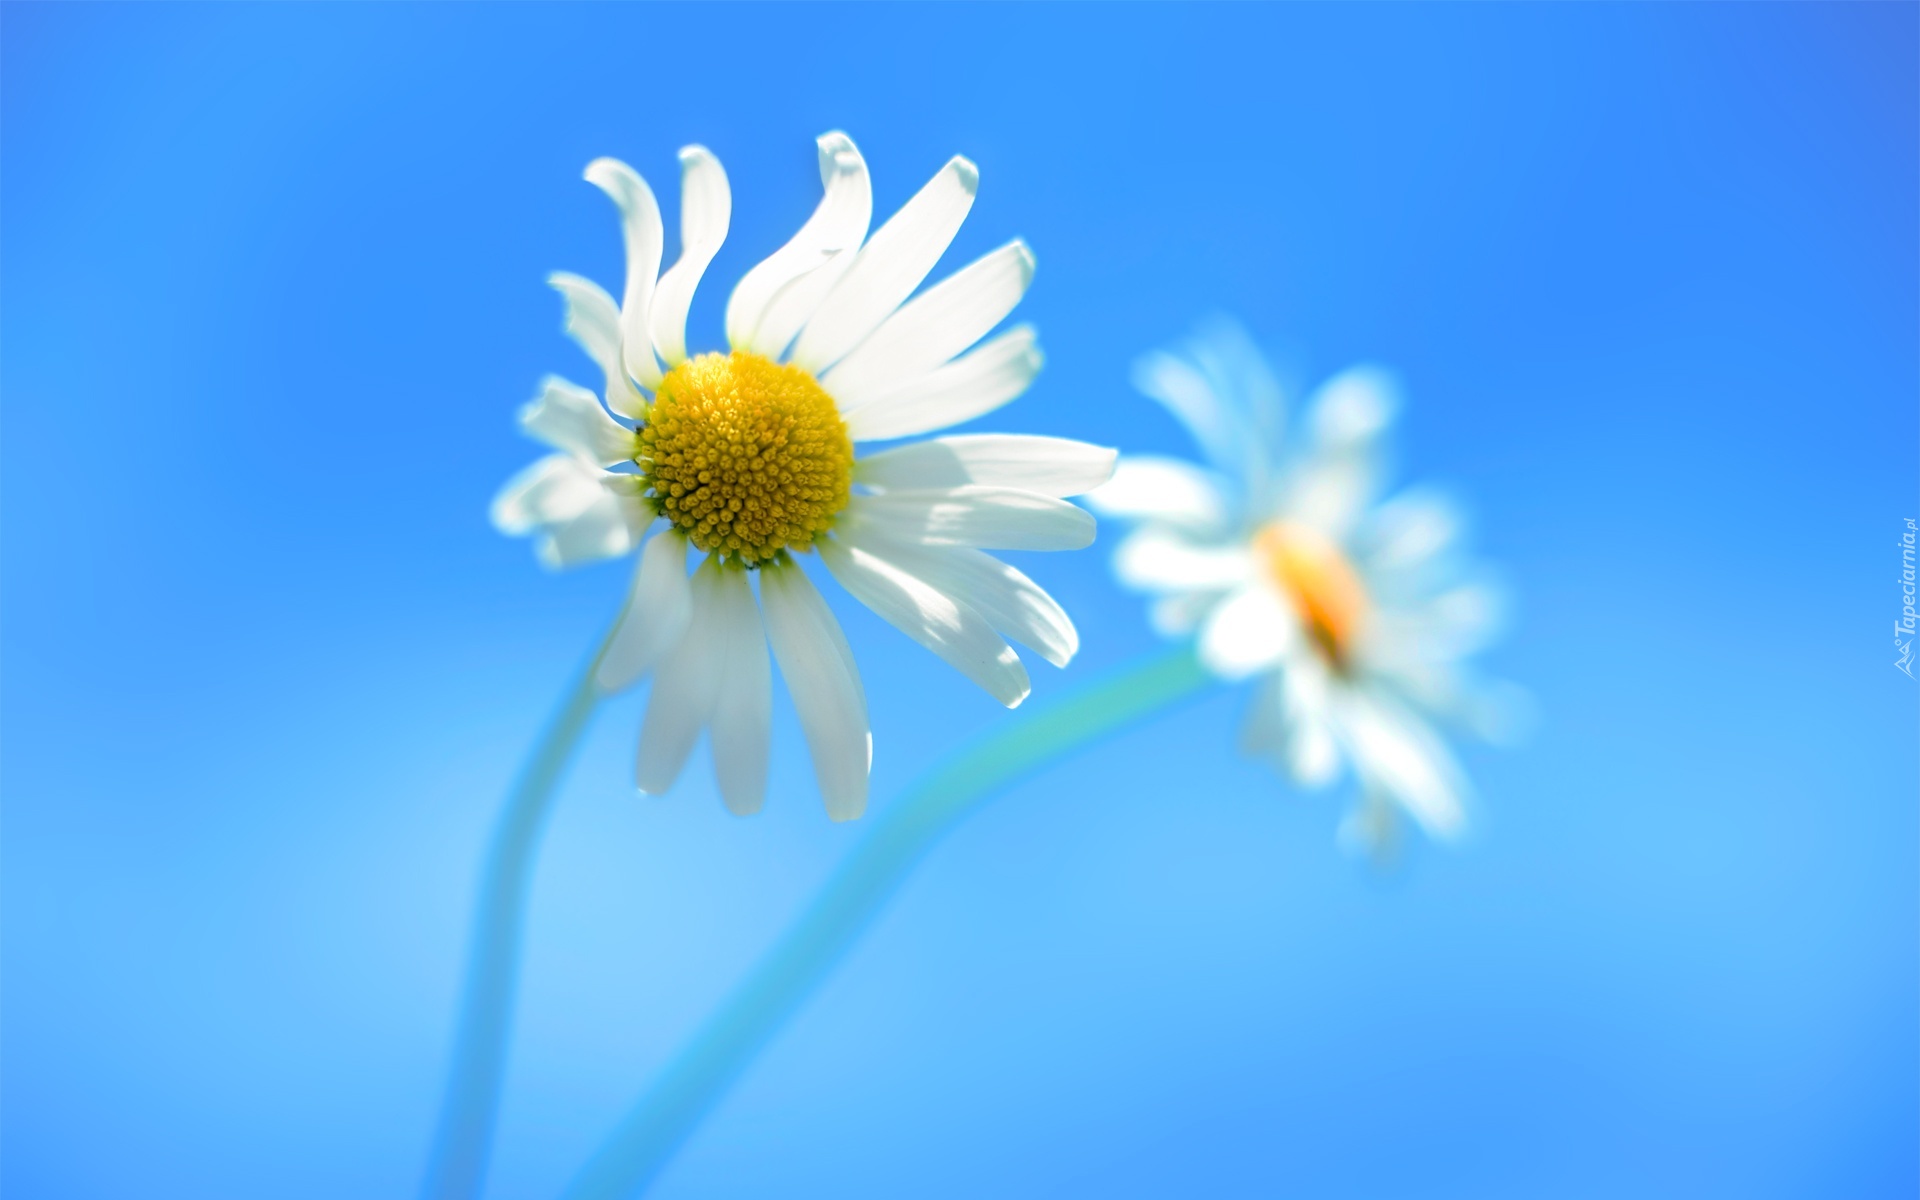 Pin Tło Niebieskie Kwiatki on Pinterest